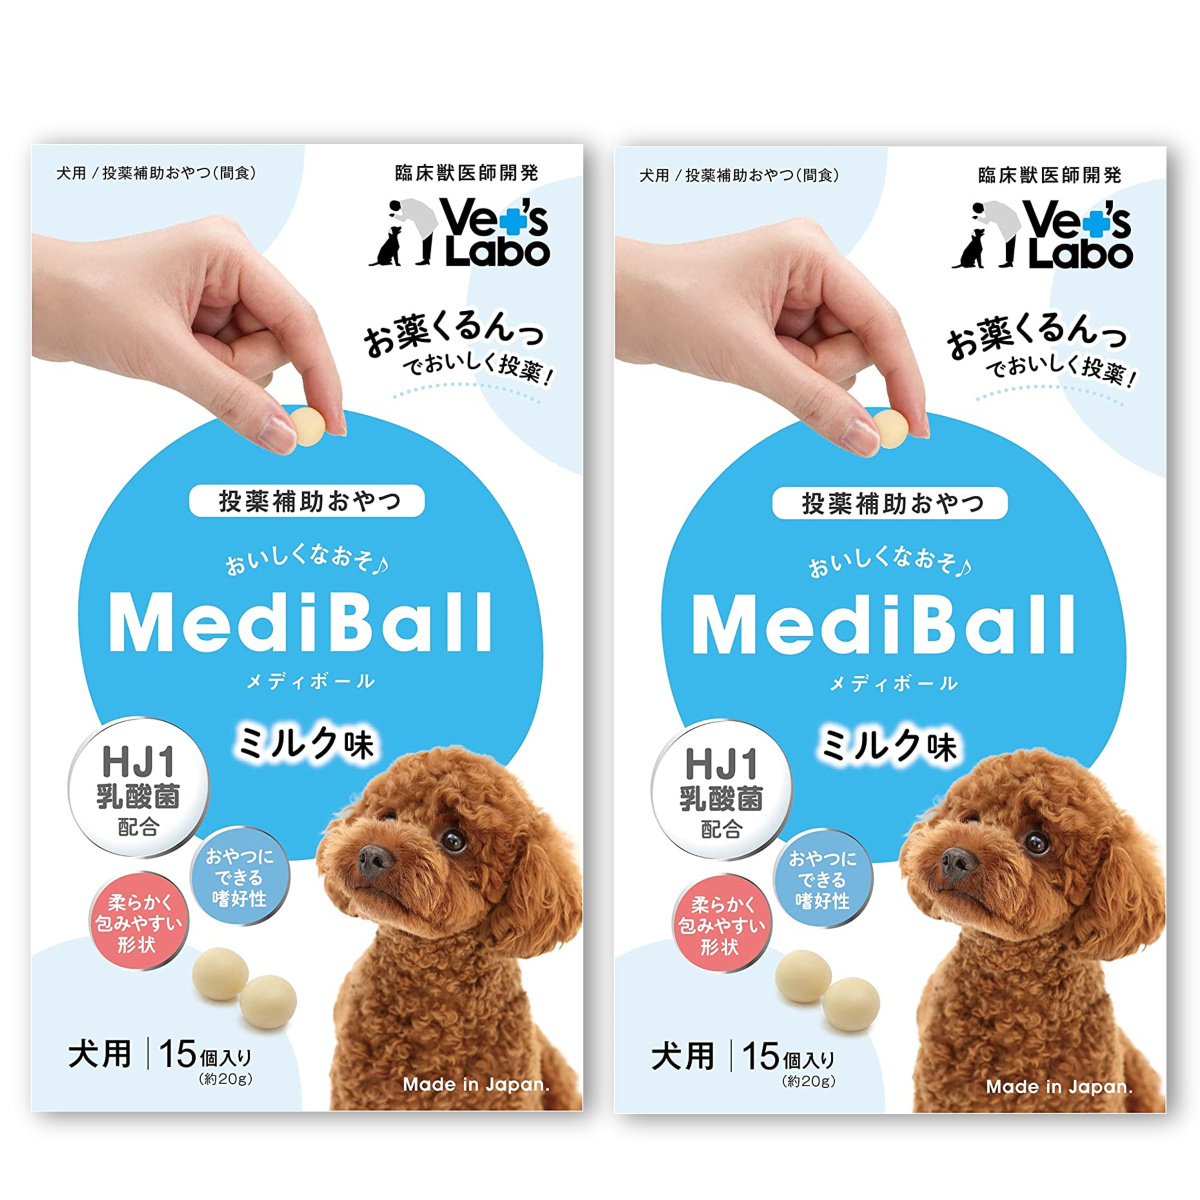 メディボール MEDIBALL ミルク味 犬用 15個入 ×2袋セット 送料無料